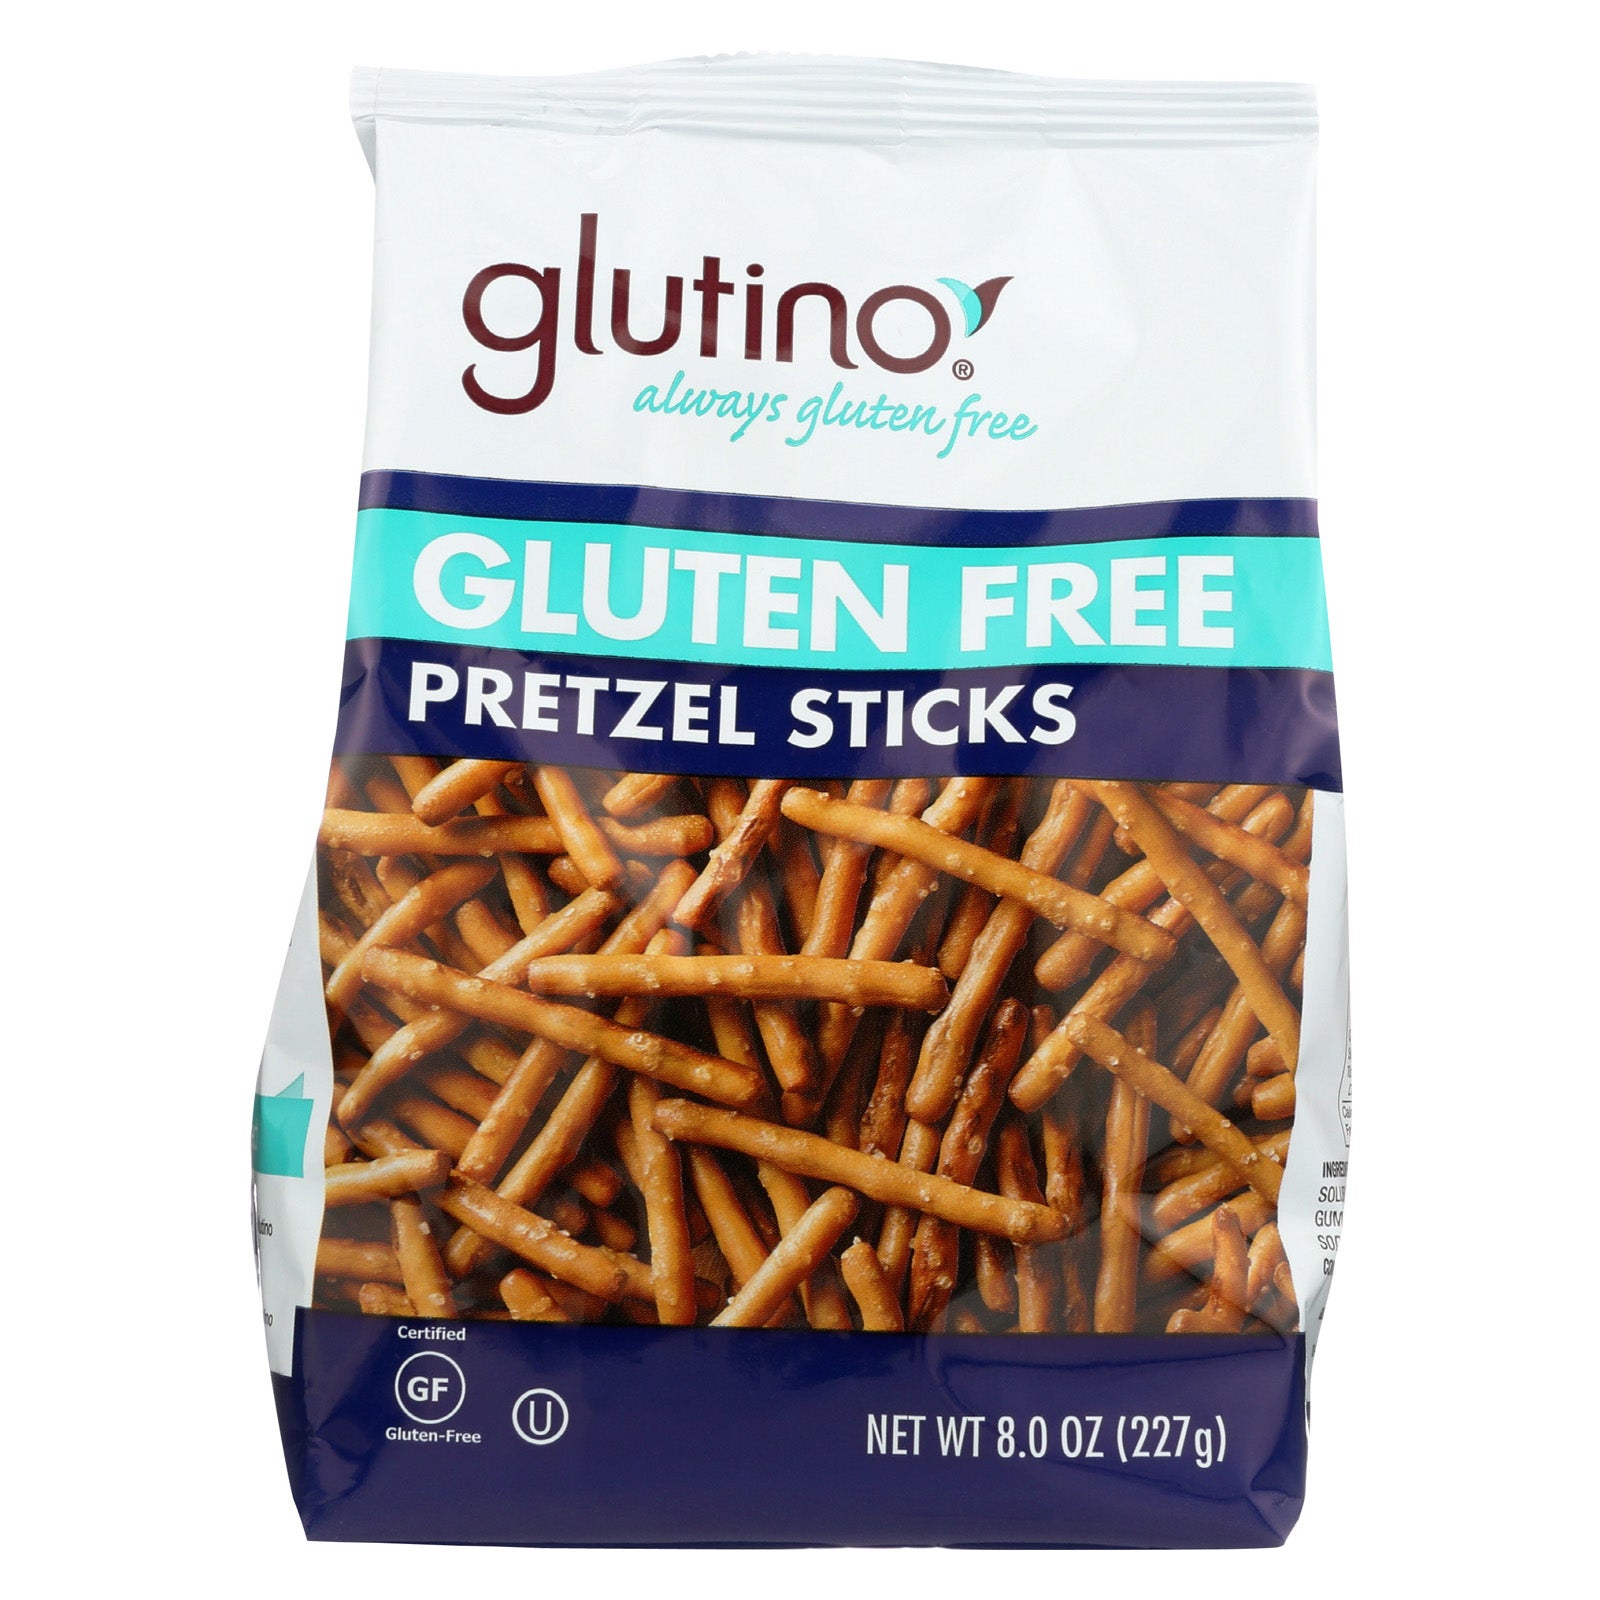 Glutino Gluten Free Pretzel Sticks. Bag